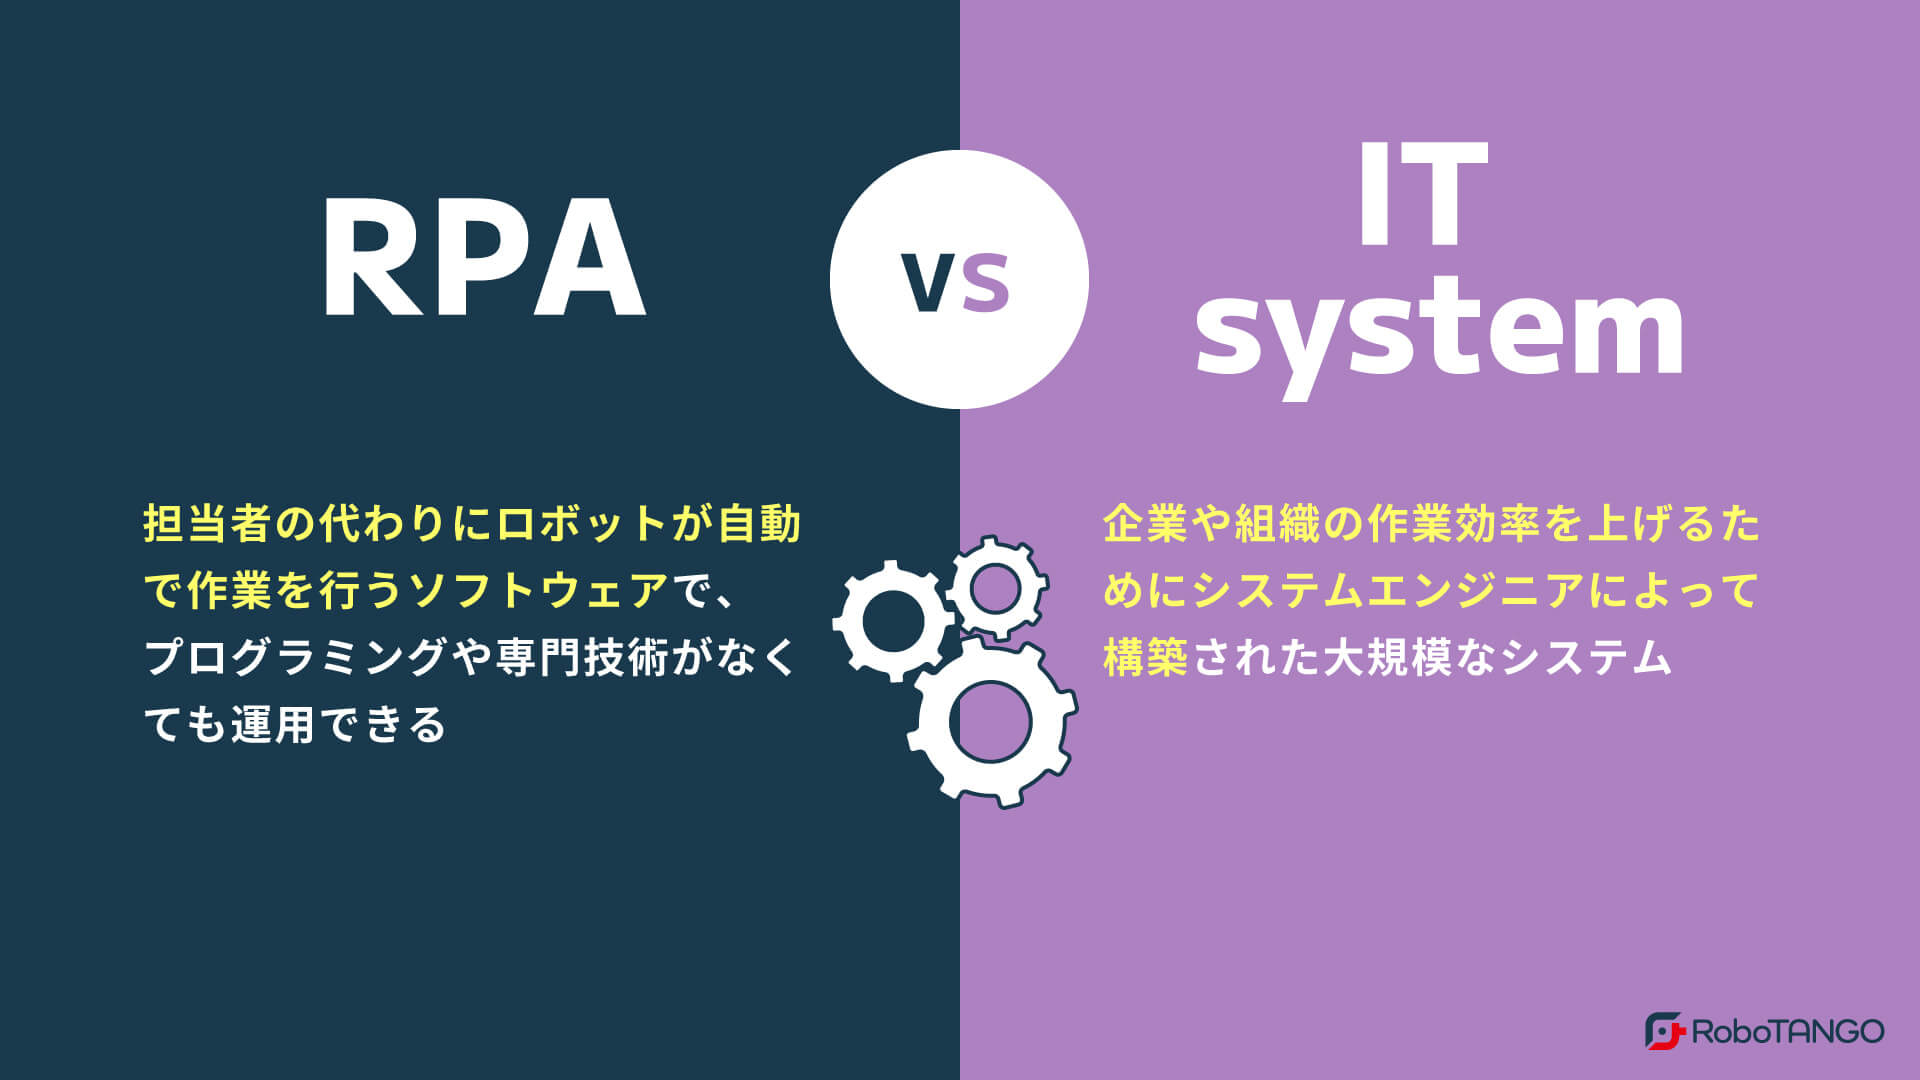 RPAとITシステムの違いとは？